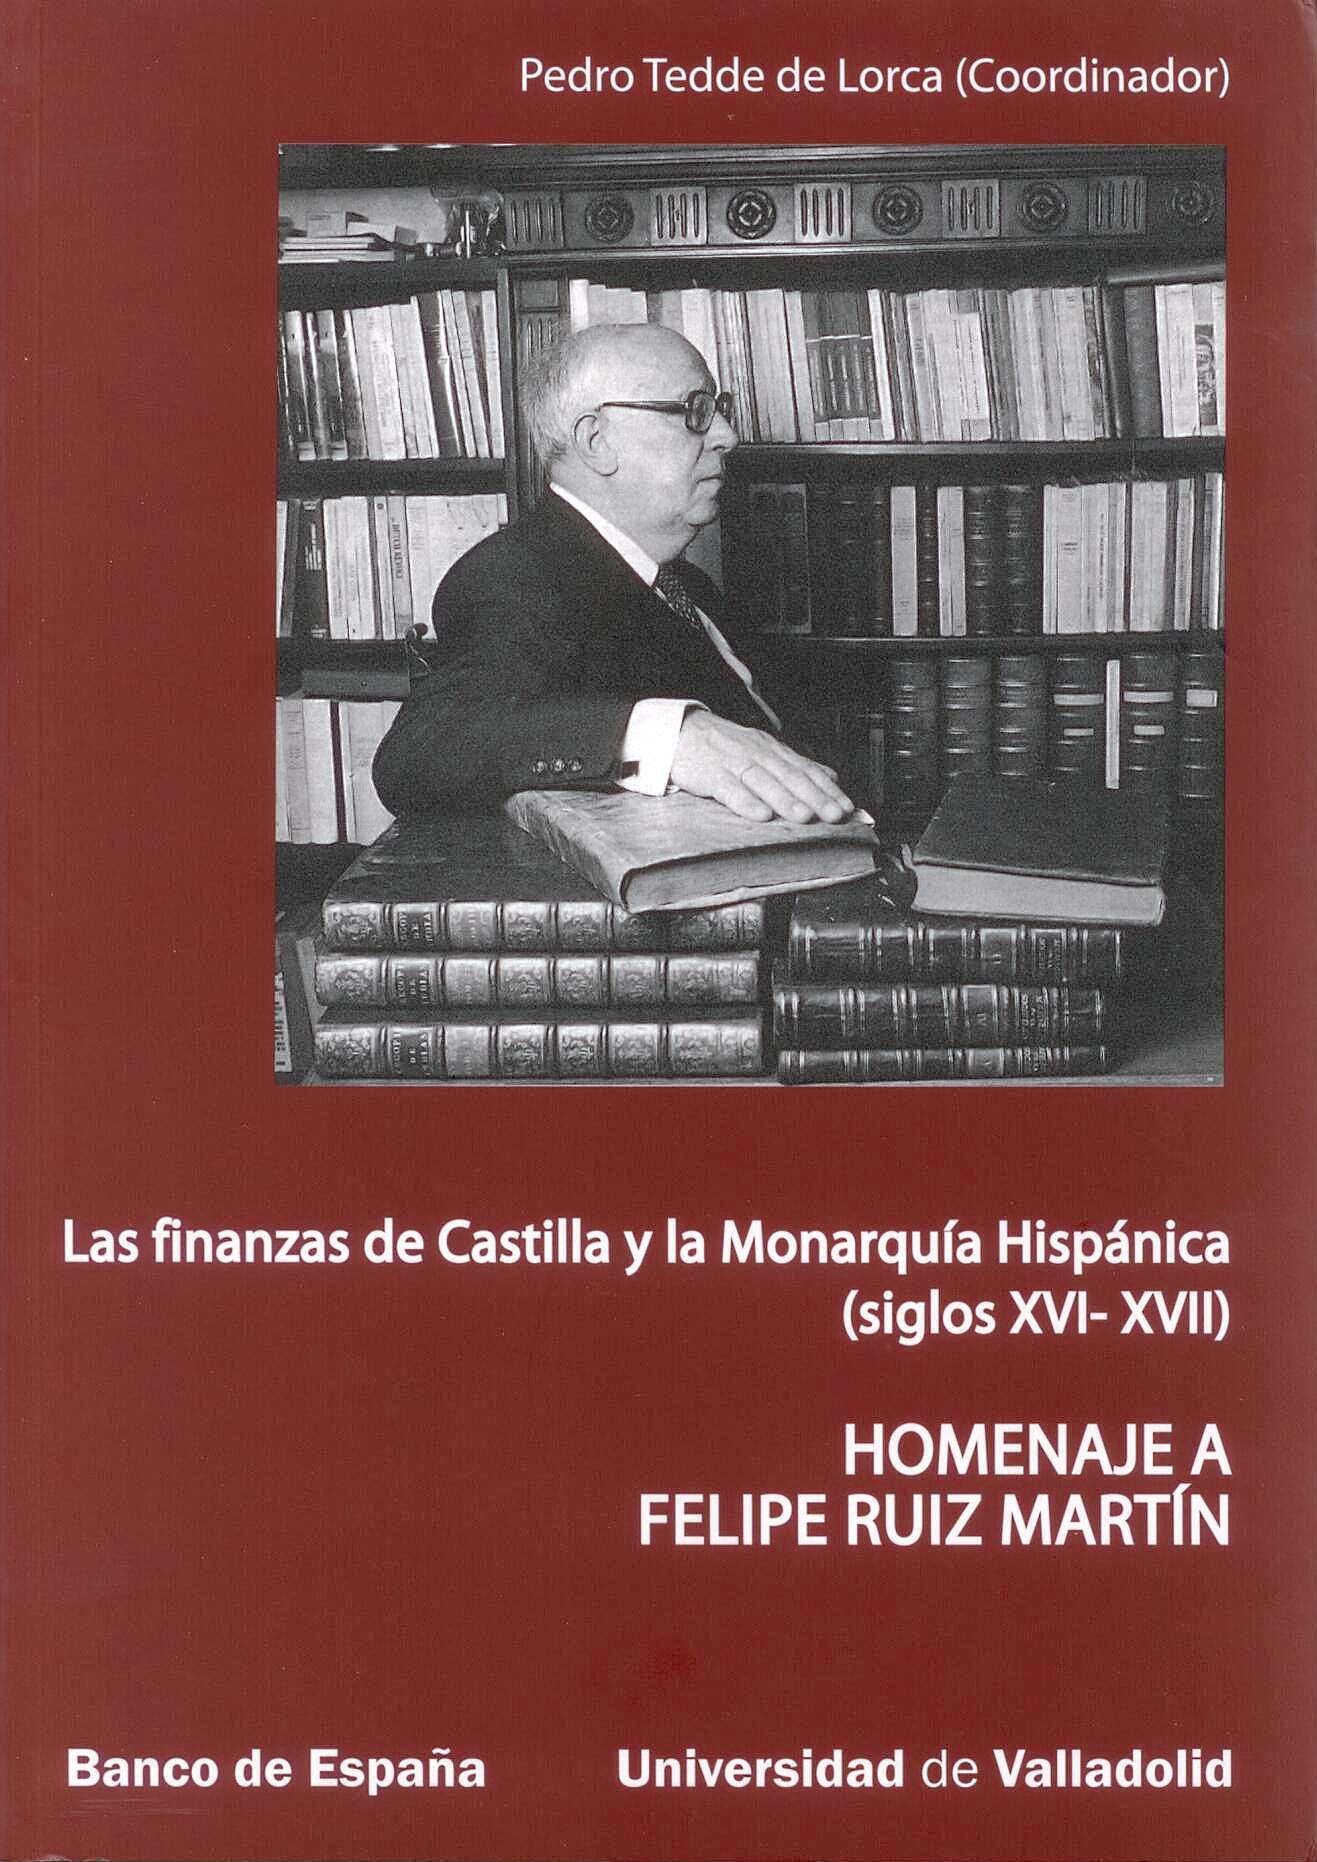 Las Finanzas de Castilla y la Monarquia Hispanica "Siglos Xvi-Xvii". Siglos Xvi-Xvii